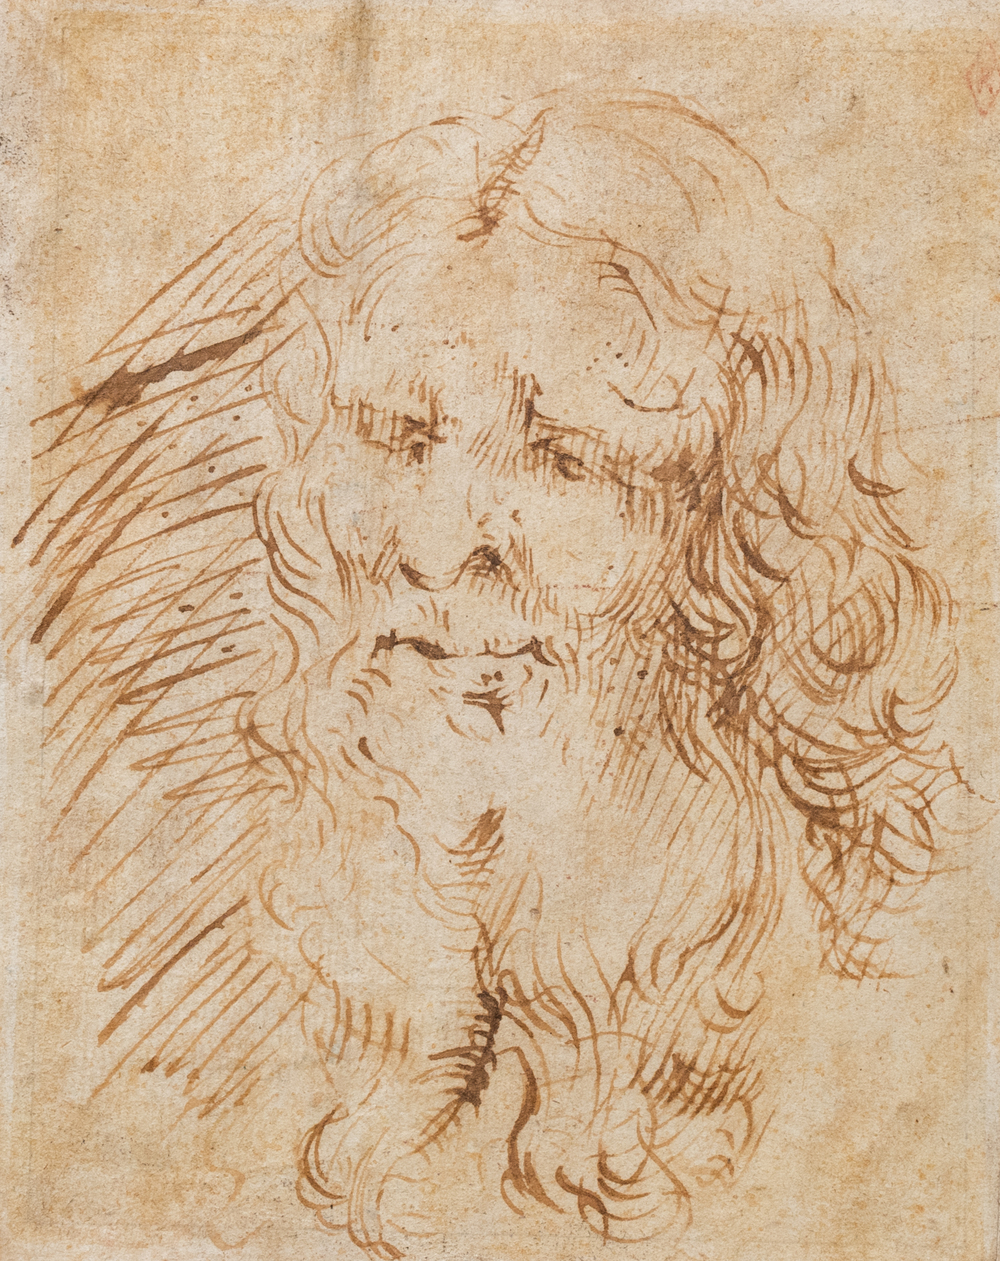 Vlaamse school, pen en inkt op papier, 17e eeuw: Portret van een bebaarde ouderling